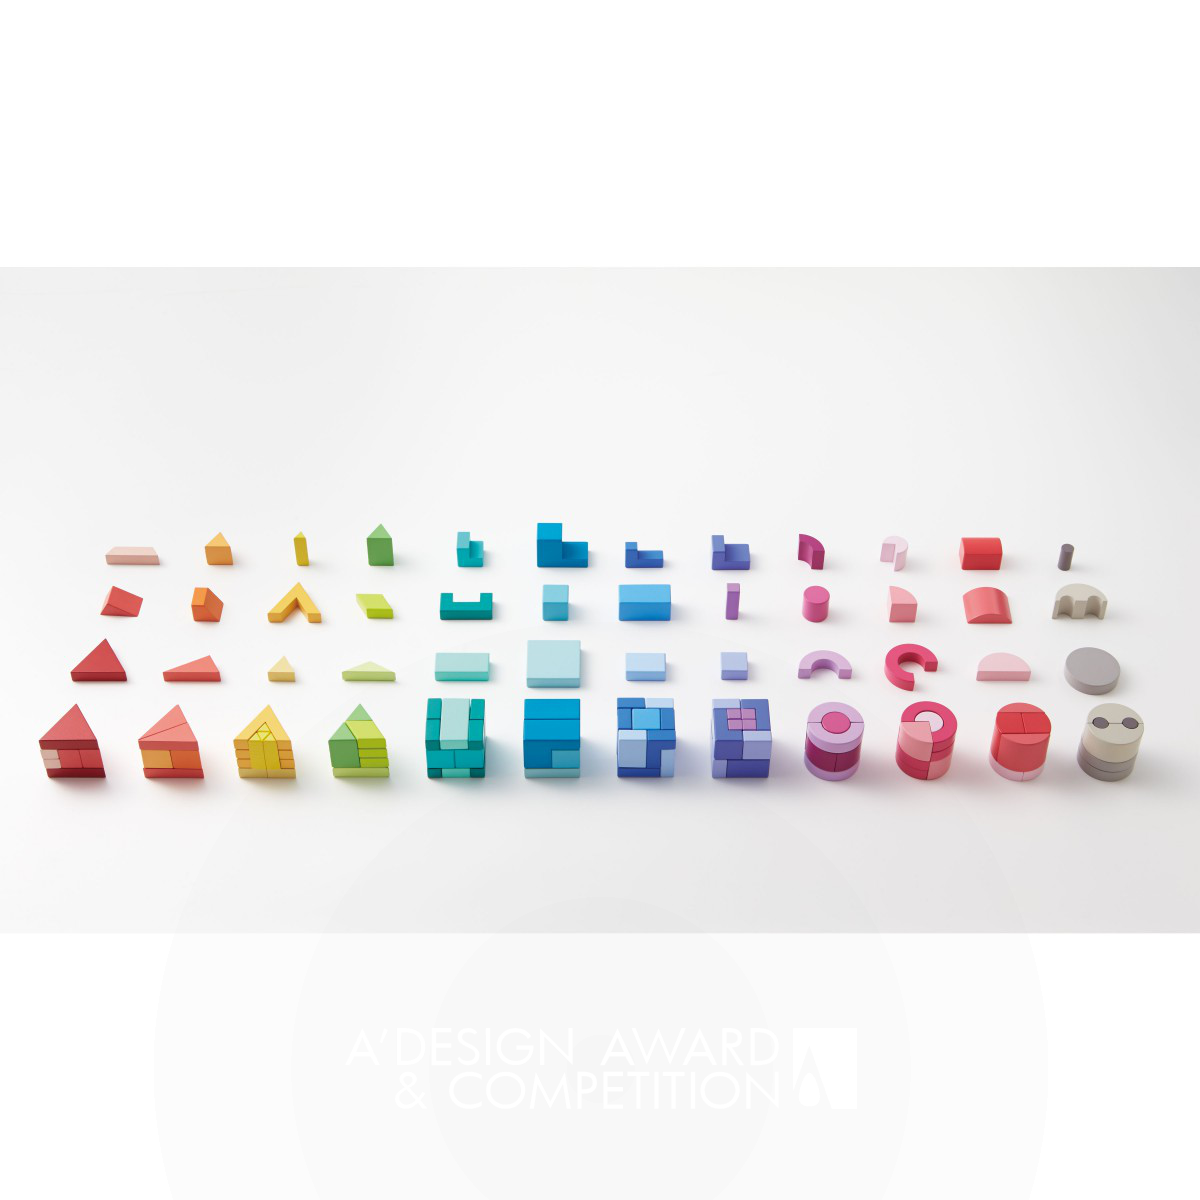 Kuum <b>toy blocks